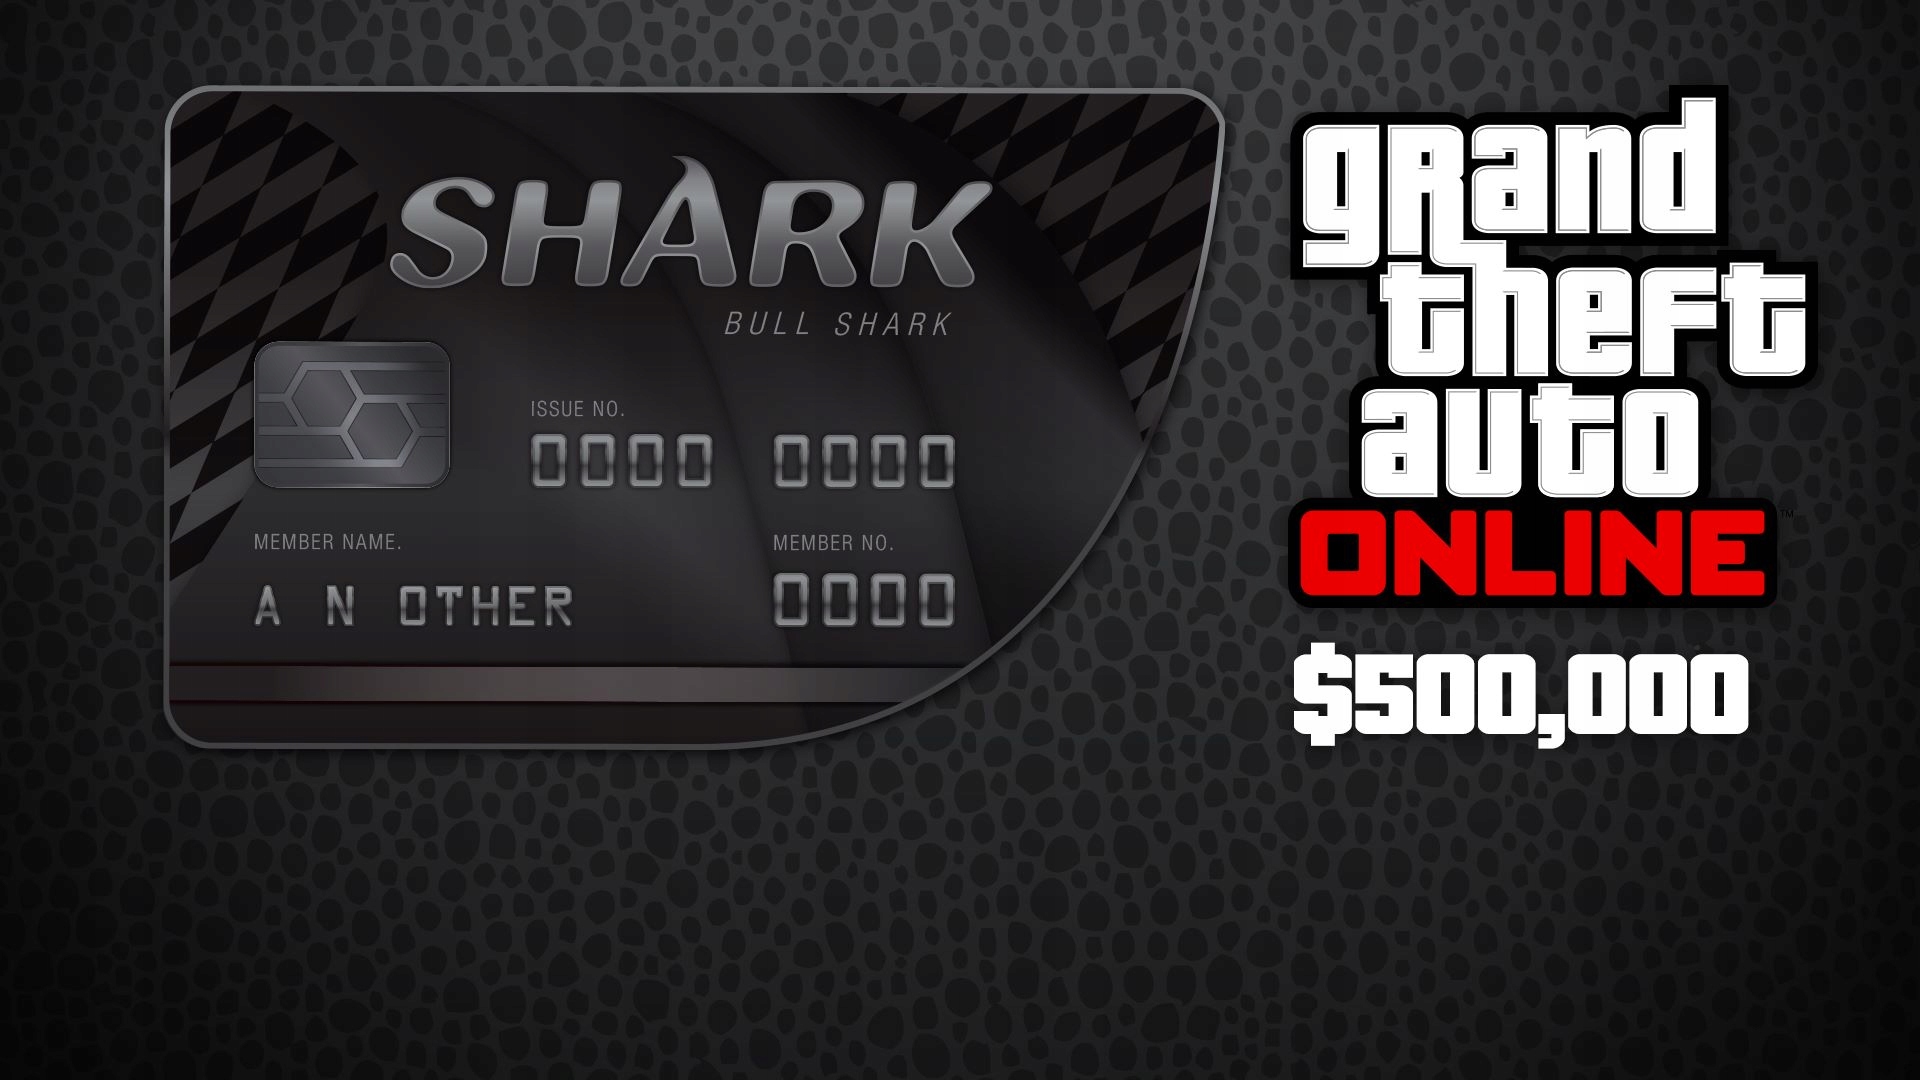 Bull Shark Cash Card на 500.000 $ GTA